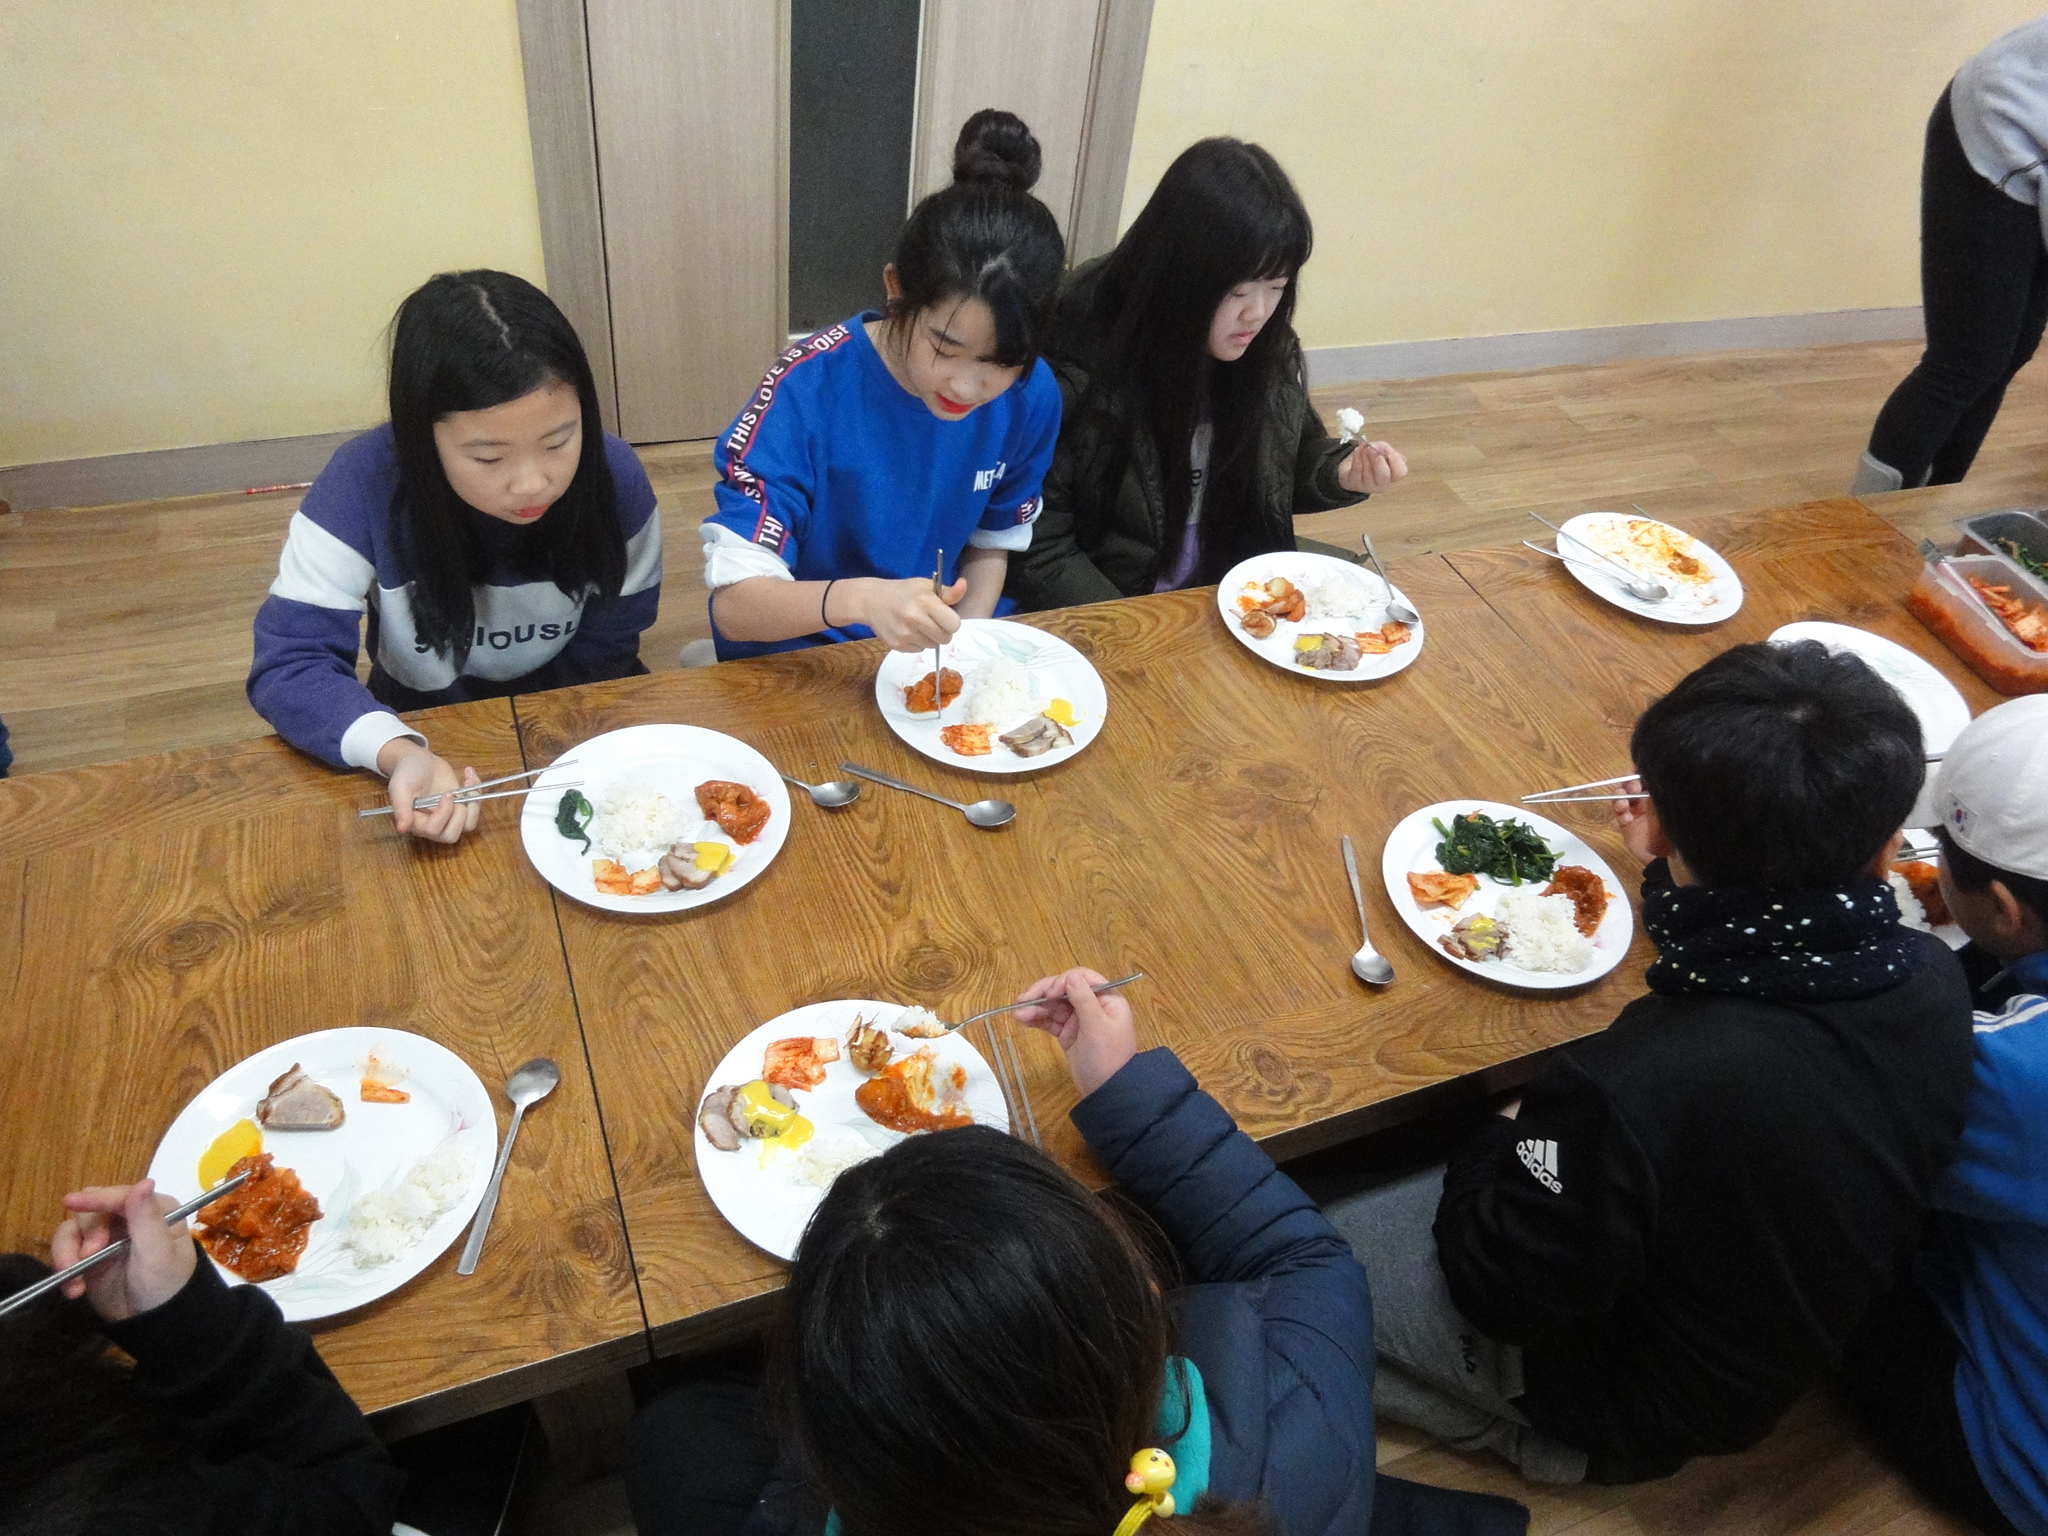 맛있는 김치와 함께 식사하는 아이들입니다. 